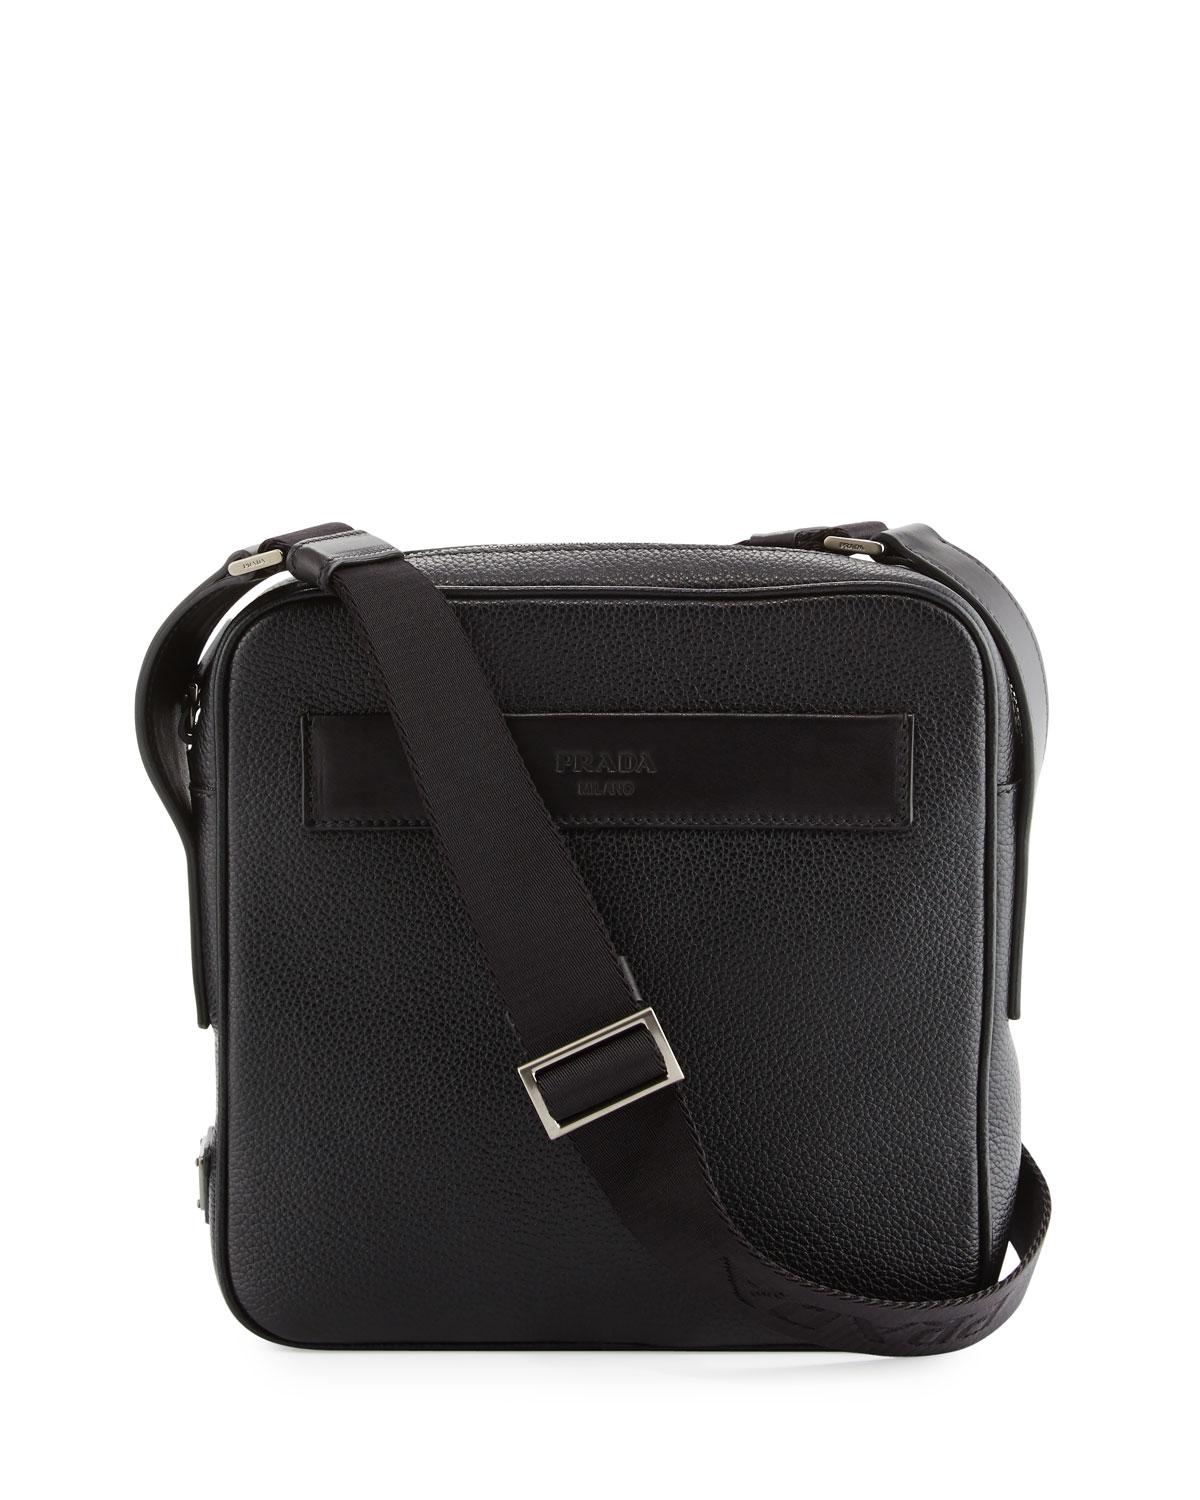 Prada Men's Leather Crossbody Messenger Bag in Black for Men - Lyst